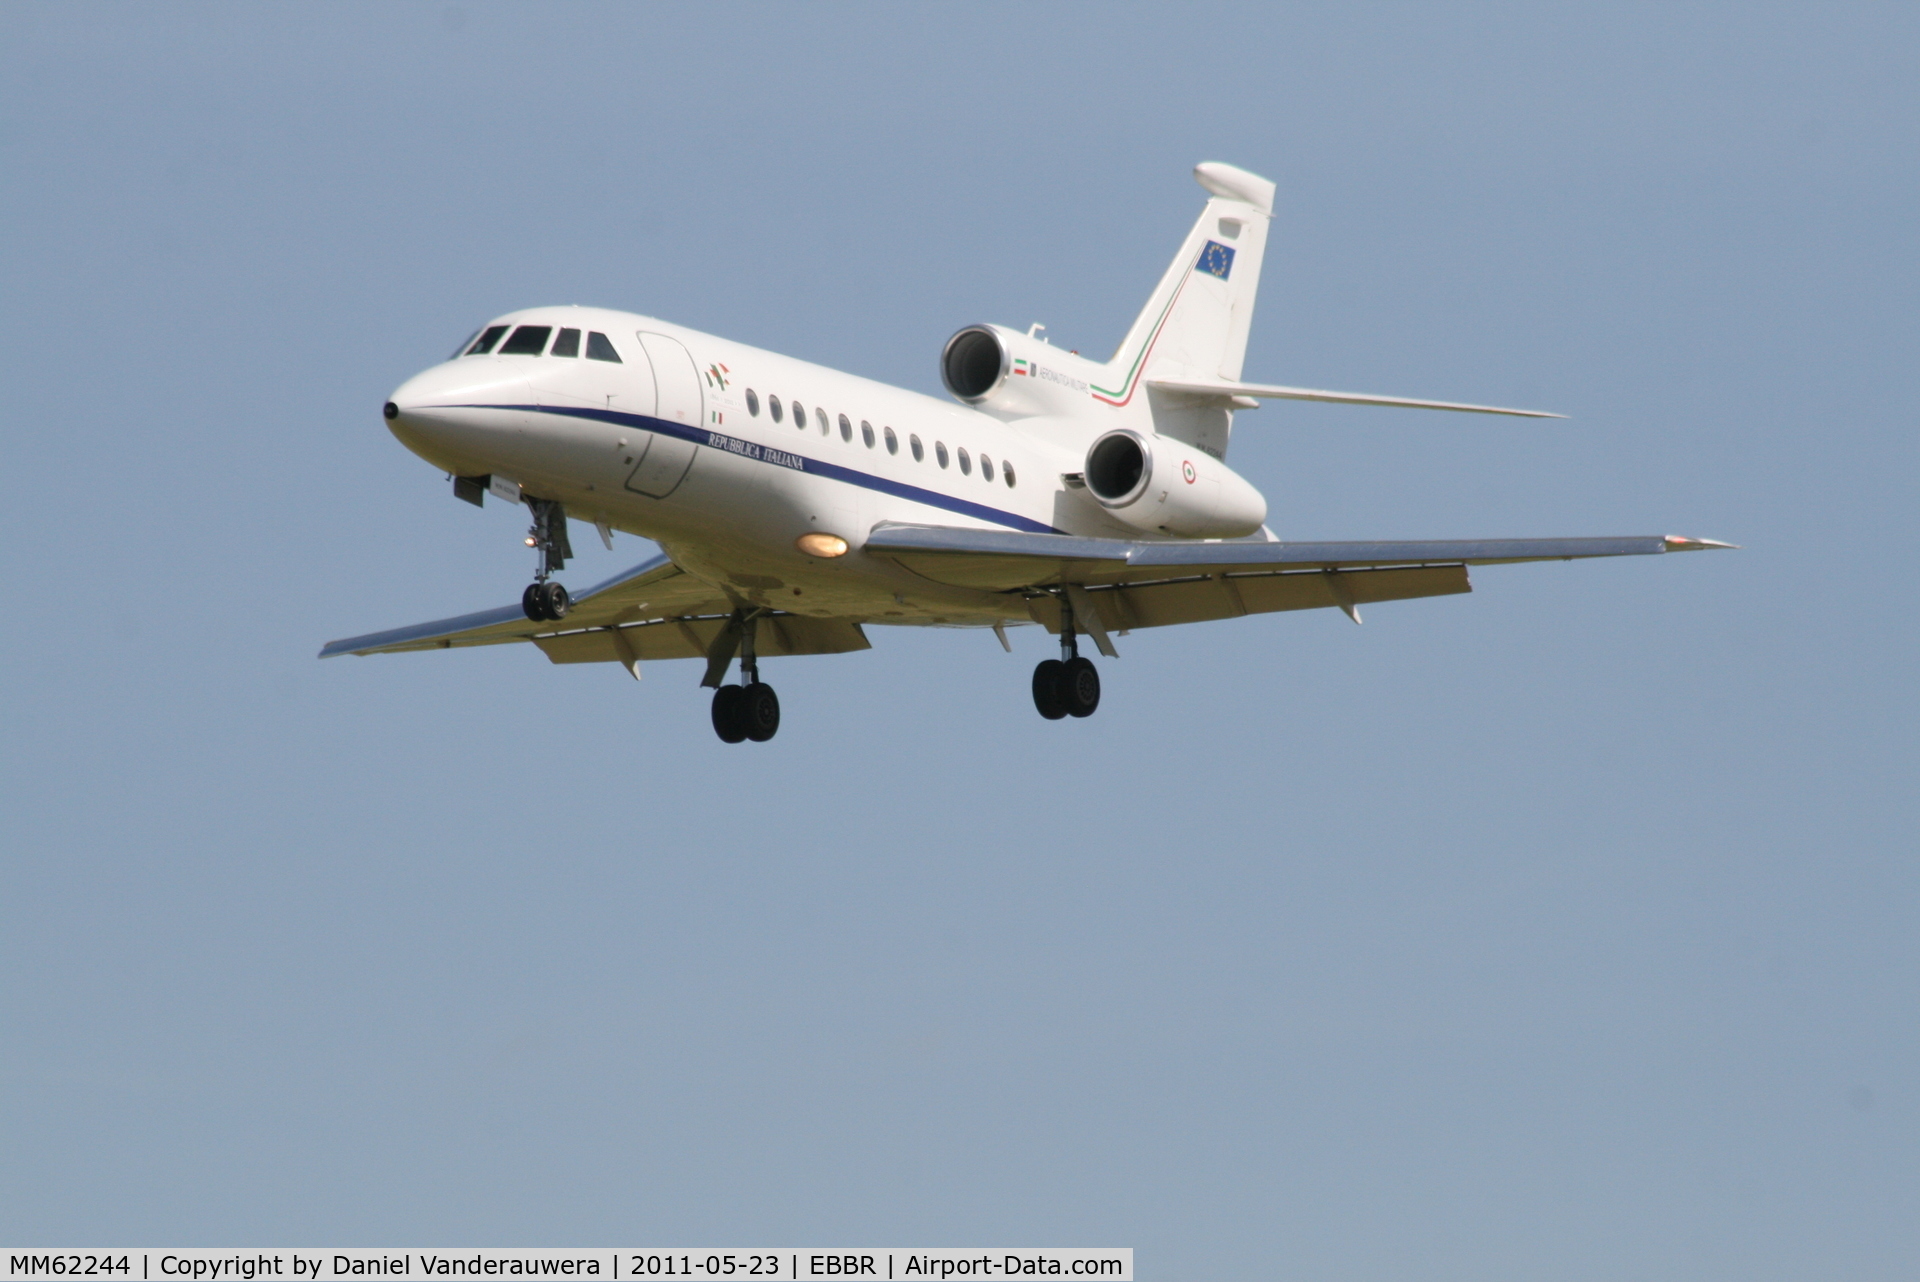 MM62244, 2005 Dassault Falcon 900EX C/N 149, on approach to RWY 25L